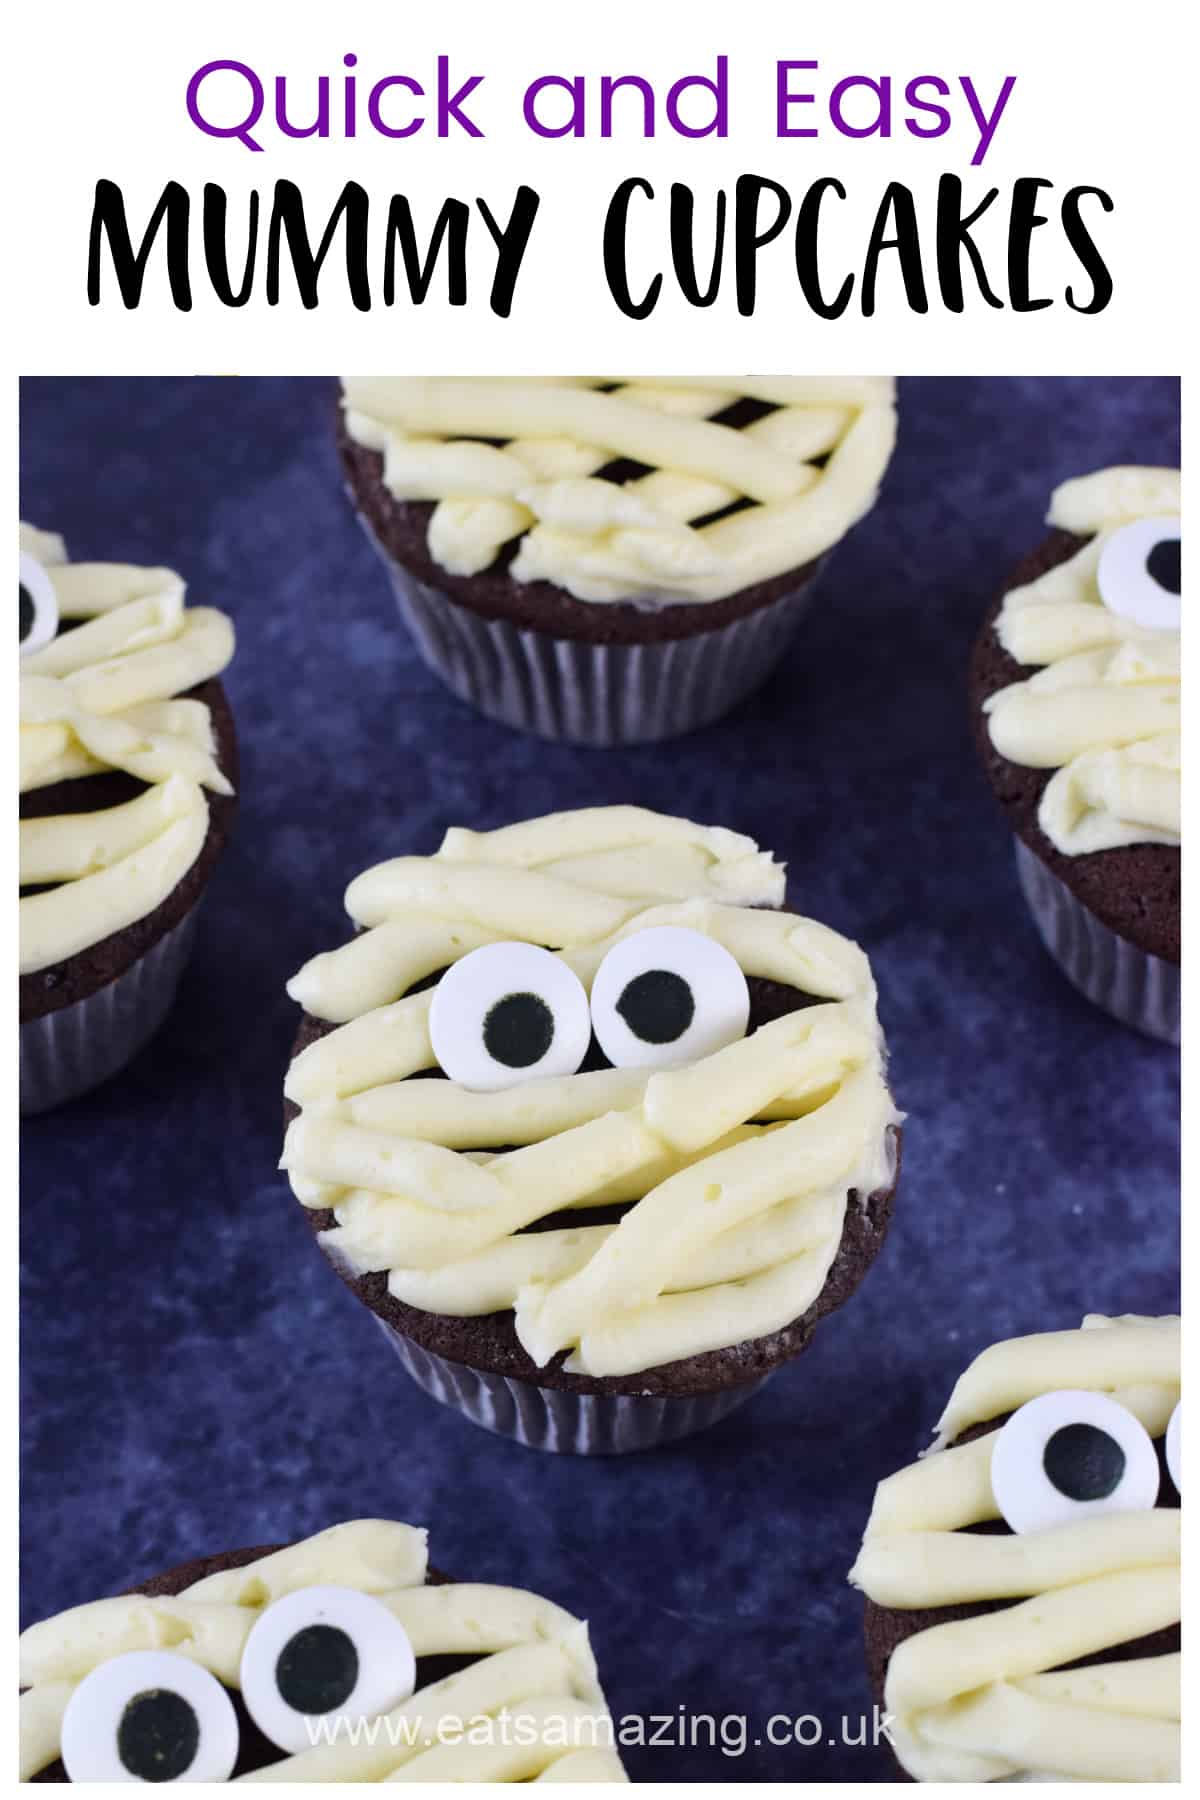 Cómo hacer una receta fácil y rápida de cupcakes Mummy - Comida para niños para fiesta de Halloween